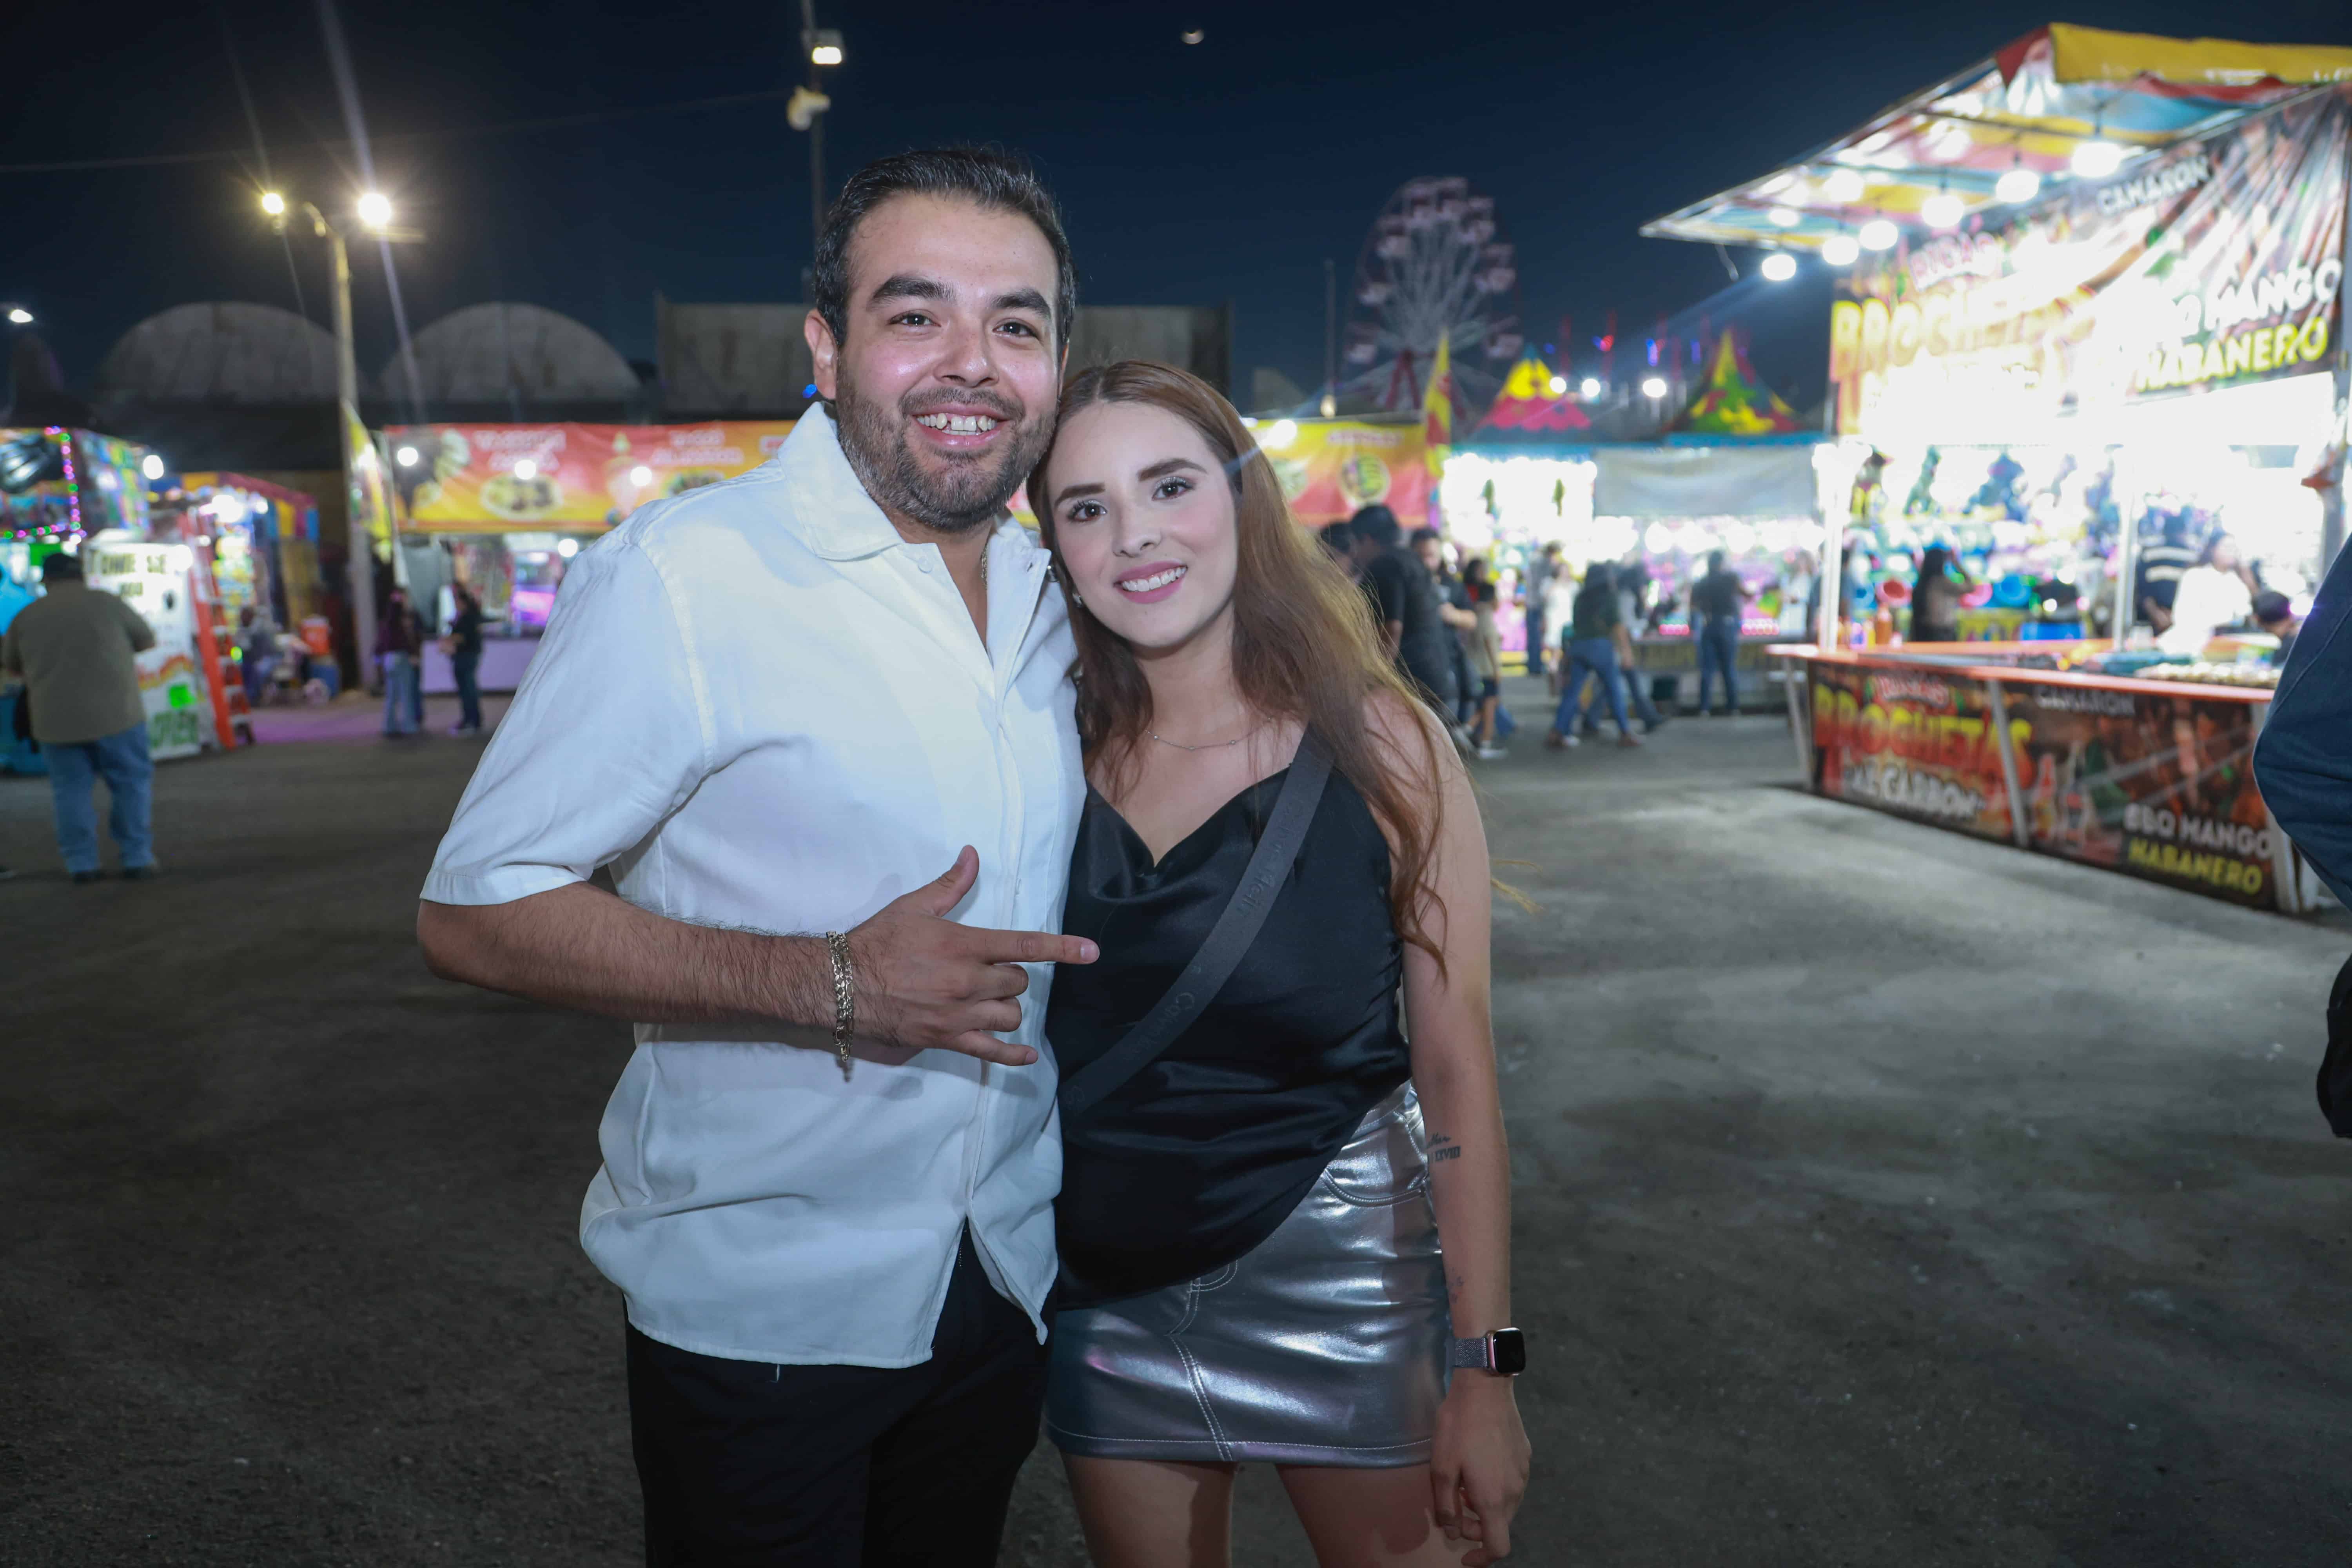 Viven una explosión de ritmos en la ExpoGan Sonora